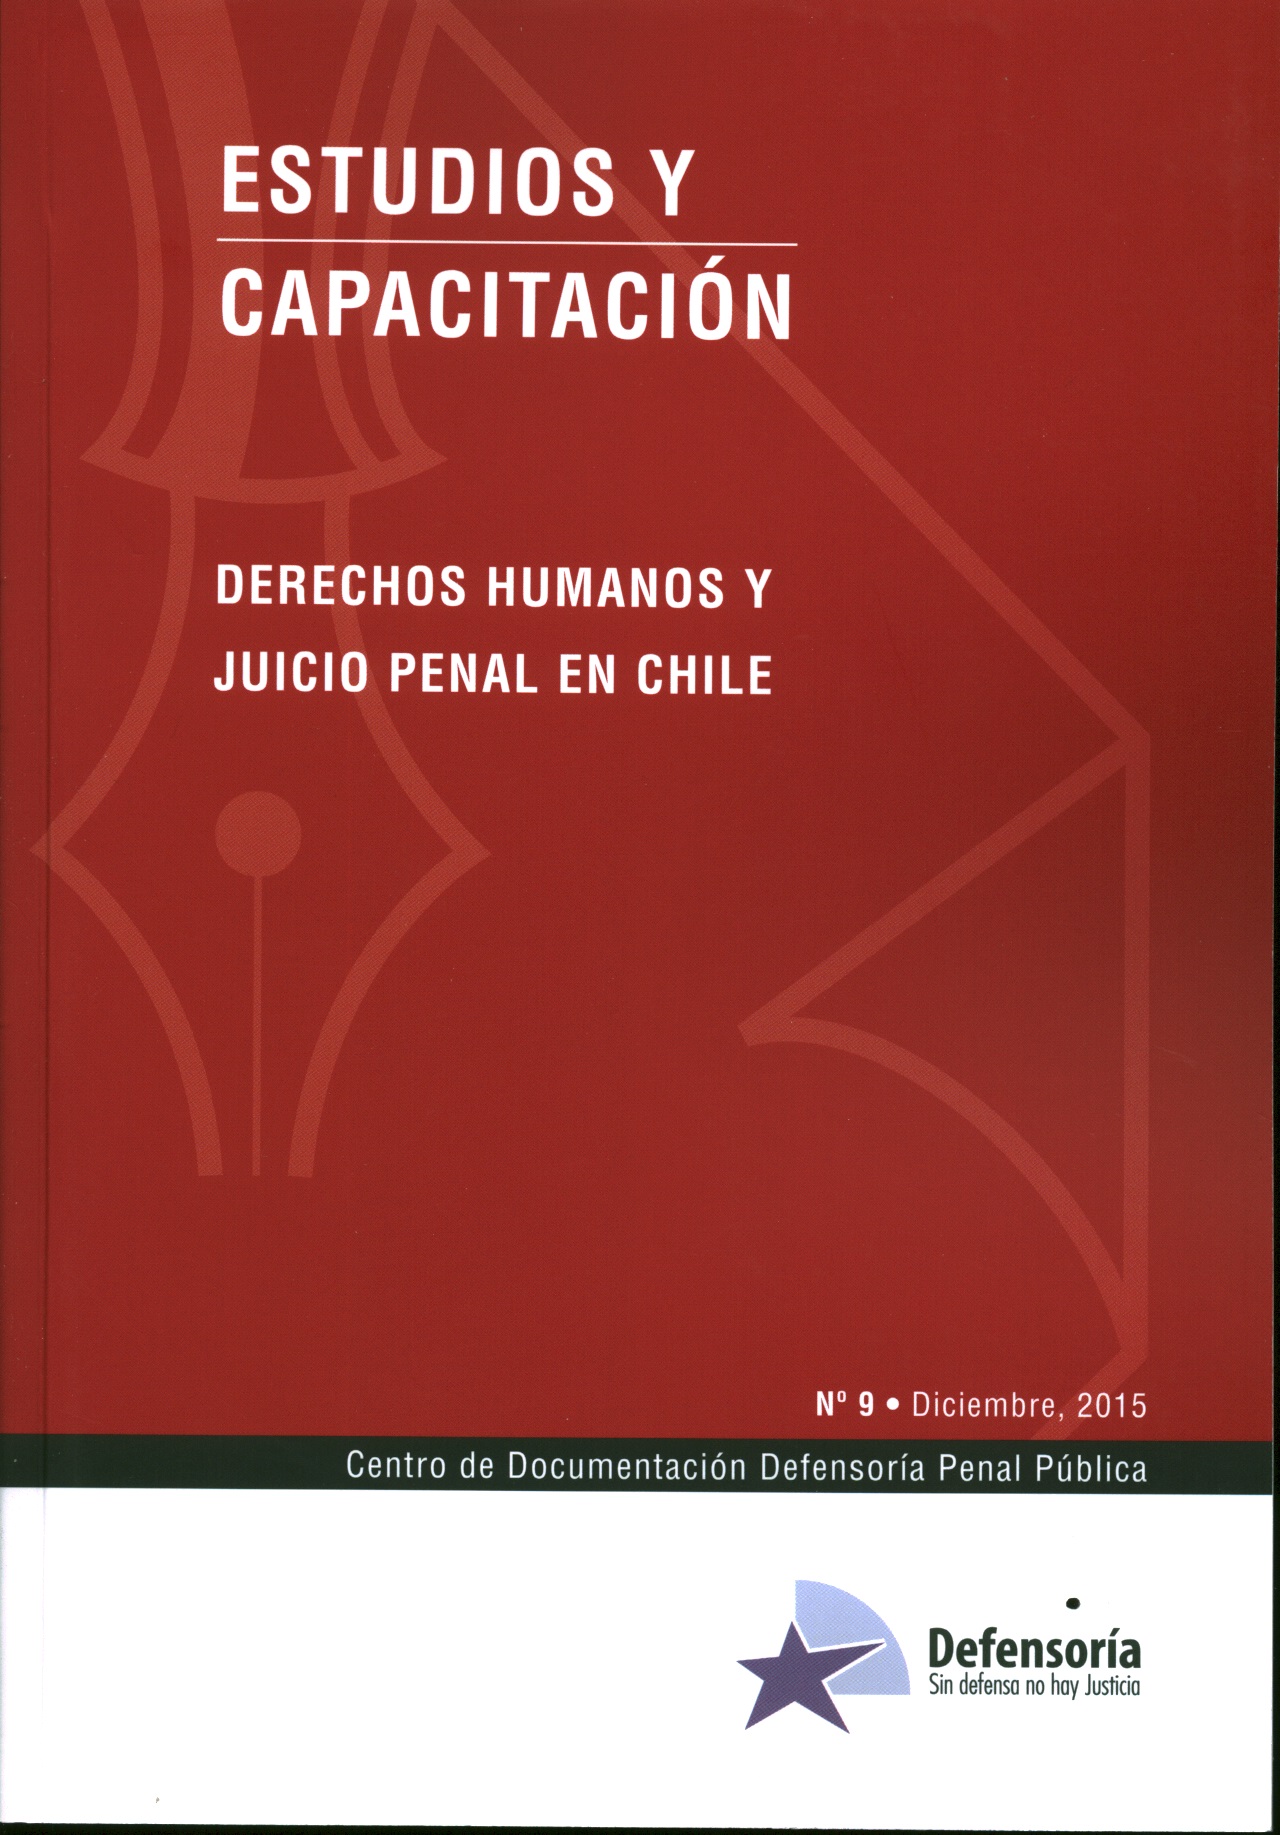 Derechos humanos y juicio penal en Chile